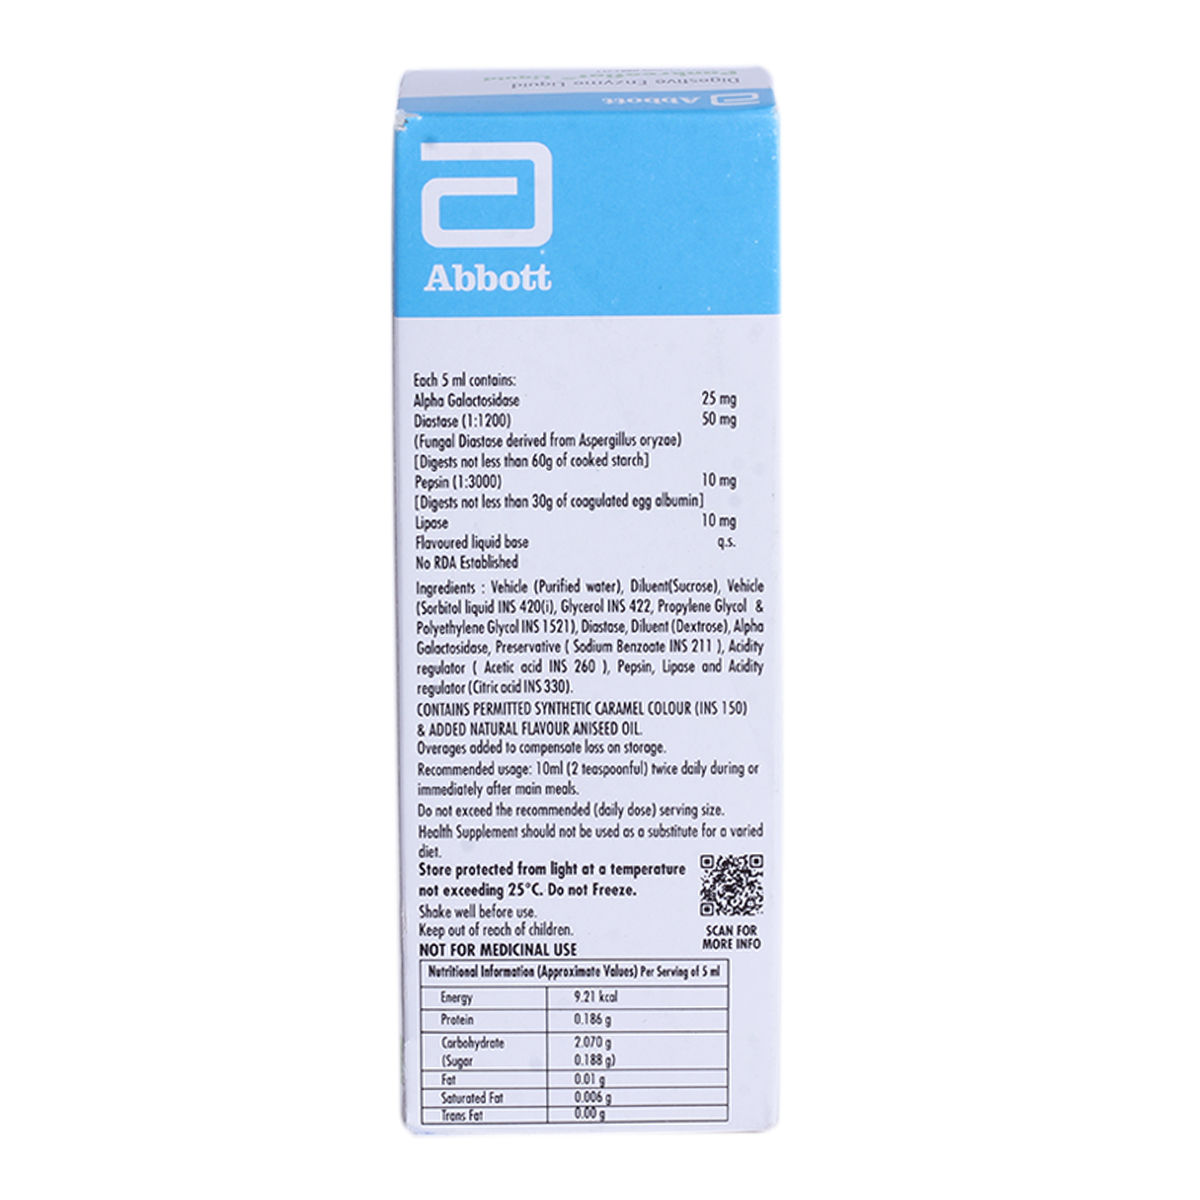 Pankreoflat Liquid 100 ml, Pack of 1 